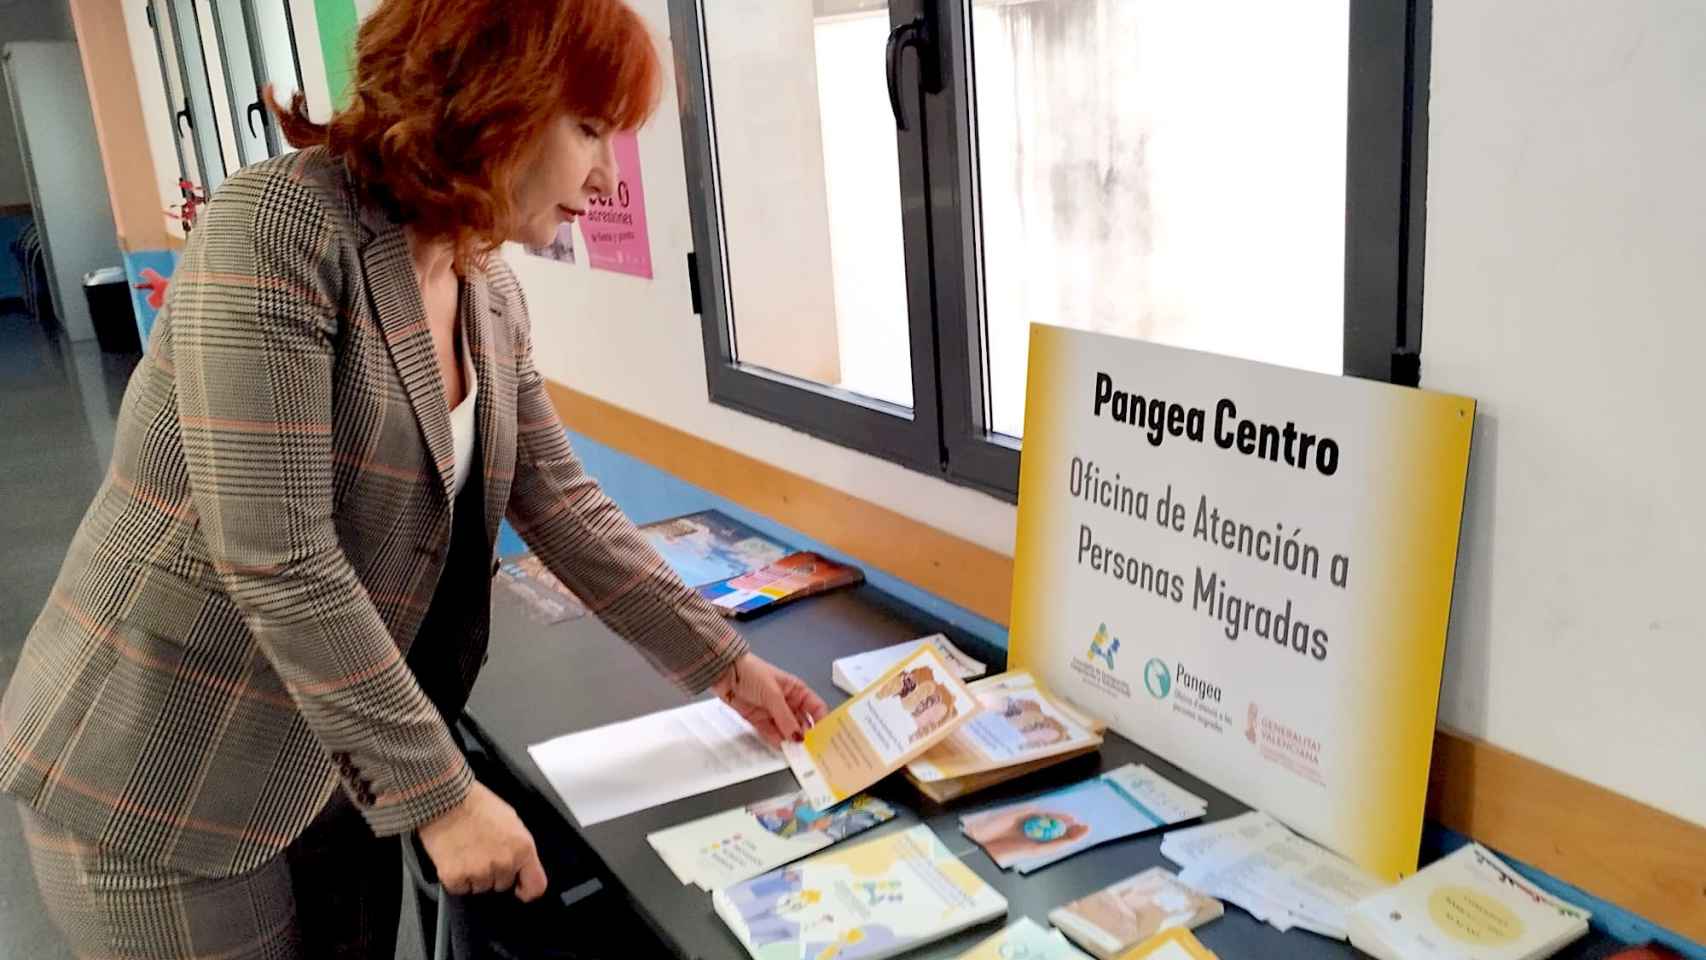 La concejala Paula León en una reciente visita a las oficinas Pangea de Alicante.